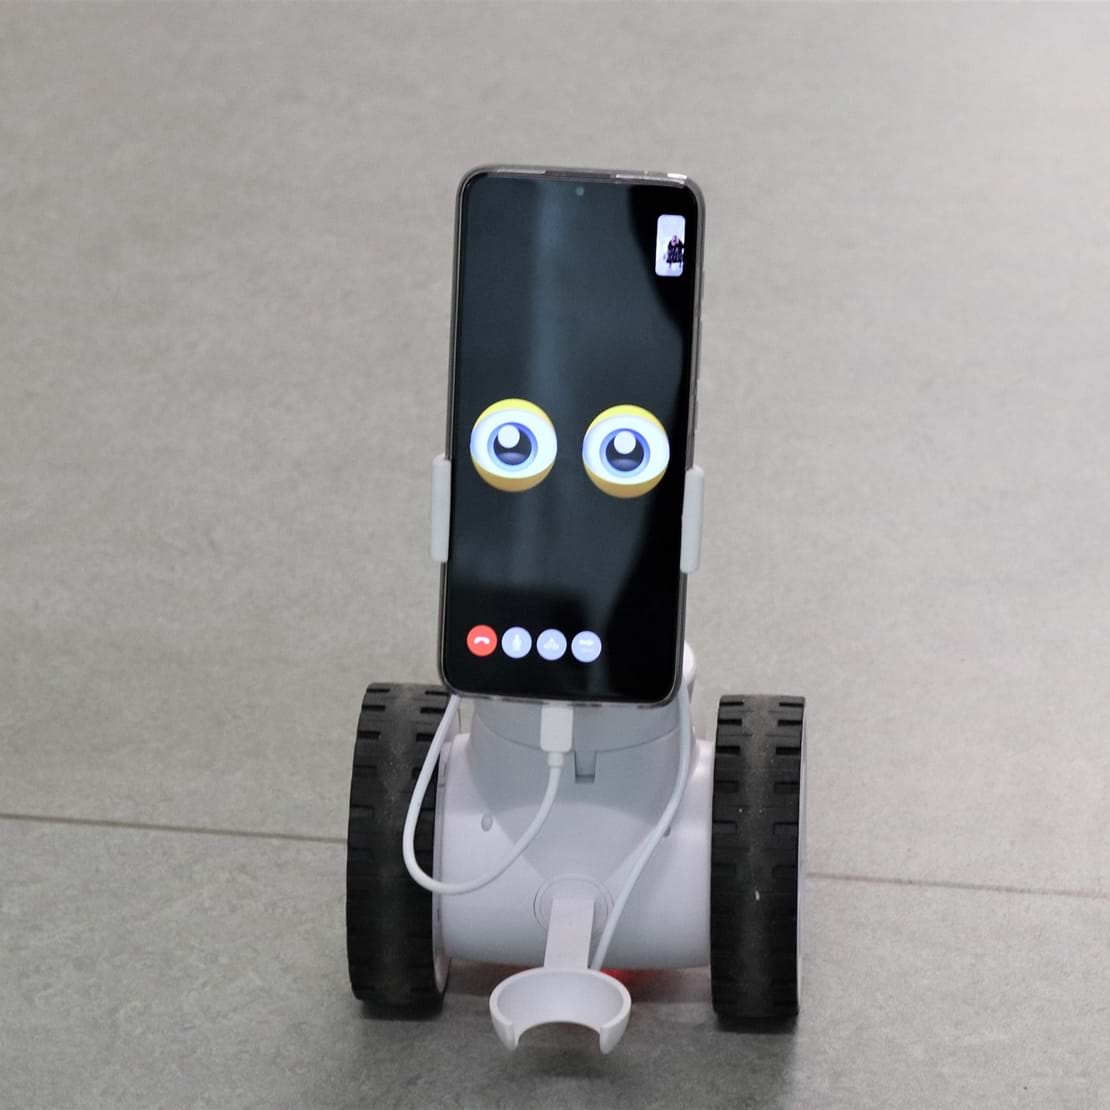 En lille robot med hjul på kigger ind i kameraet med sine tegnede øjne.